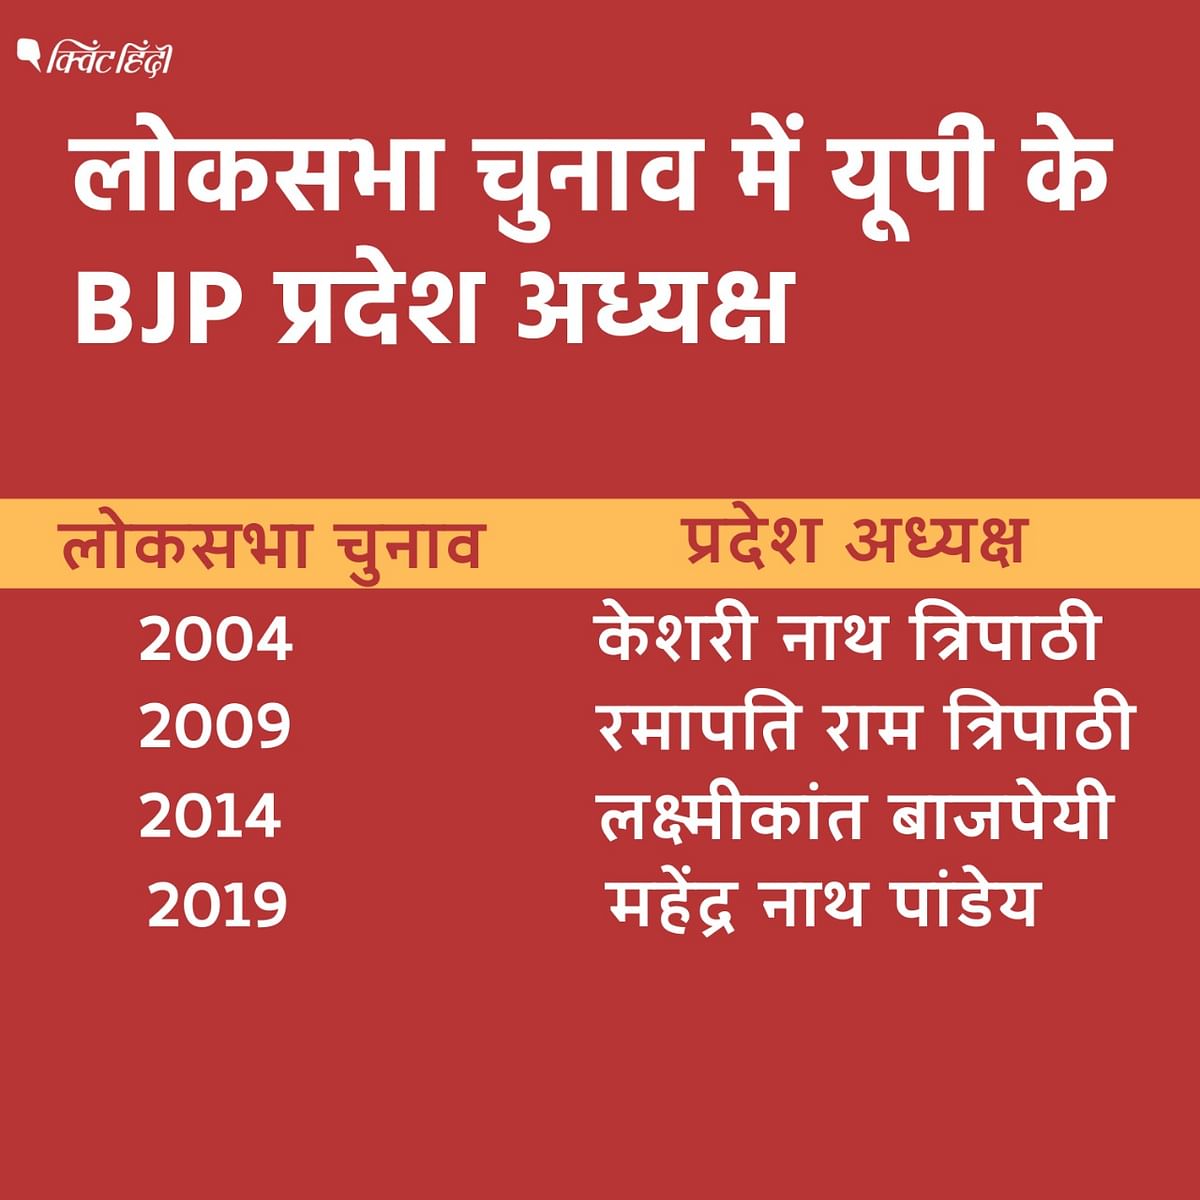 BJP UP State President:2004 से 2019 तक लोकसभा चुनाव से पहले BJP ने यूपी में किसी ब्राह्मण को ही प्रदेश अध्यक्ष बनाया